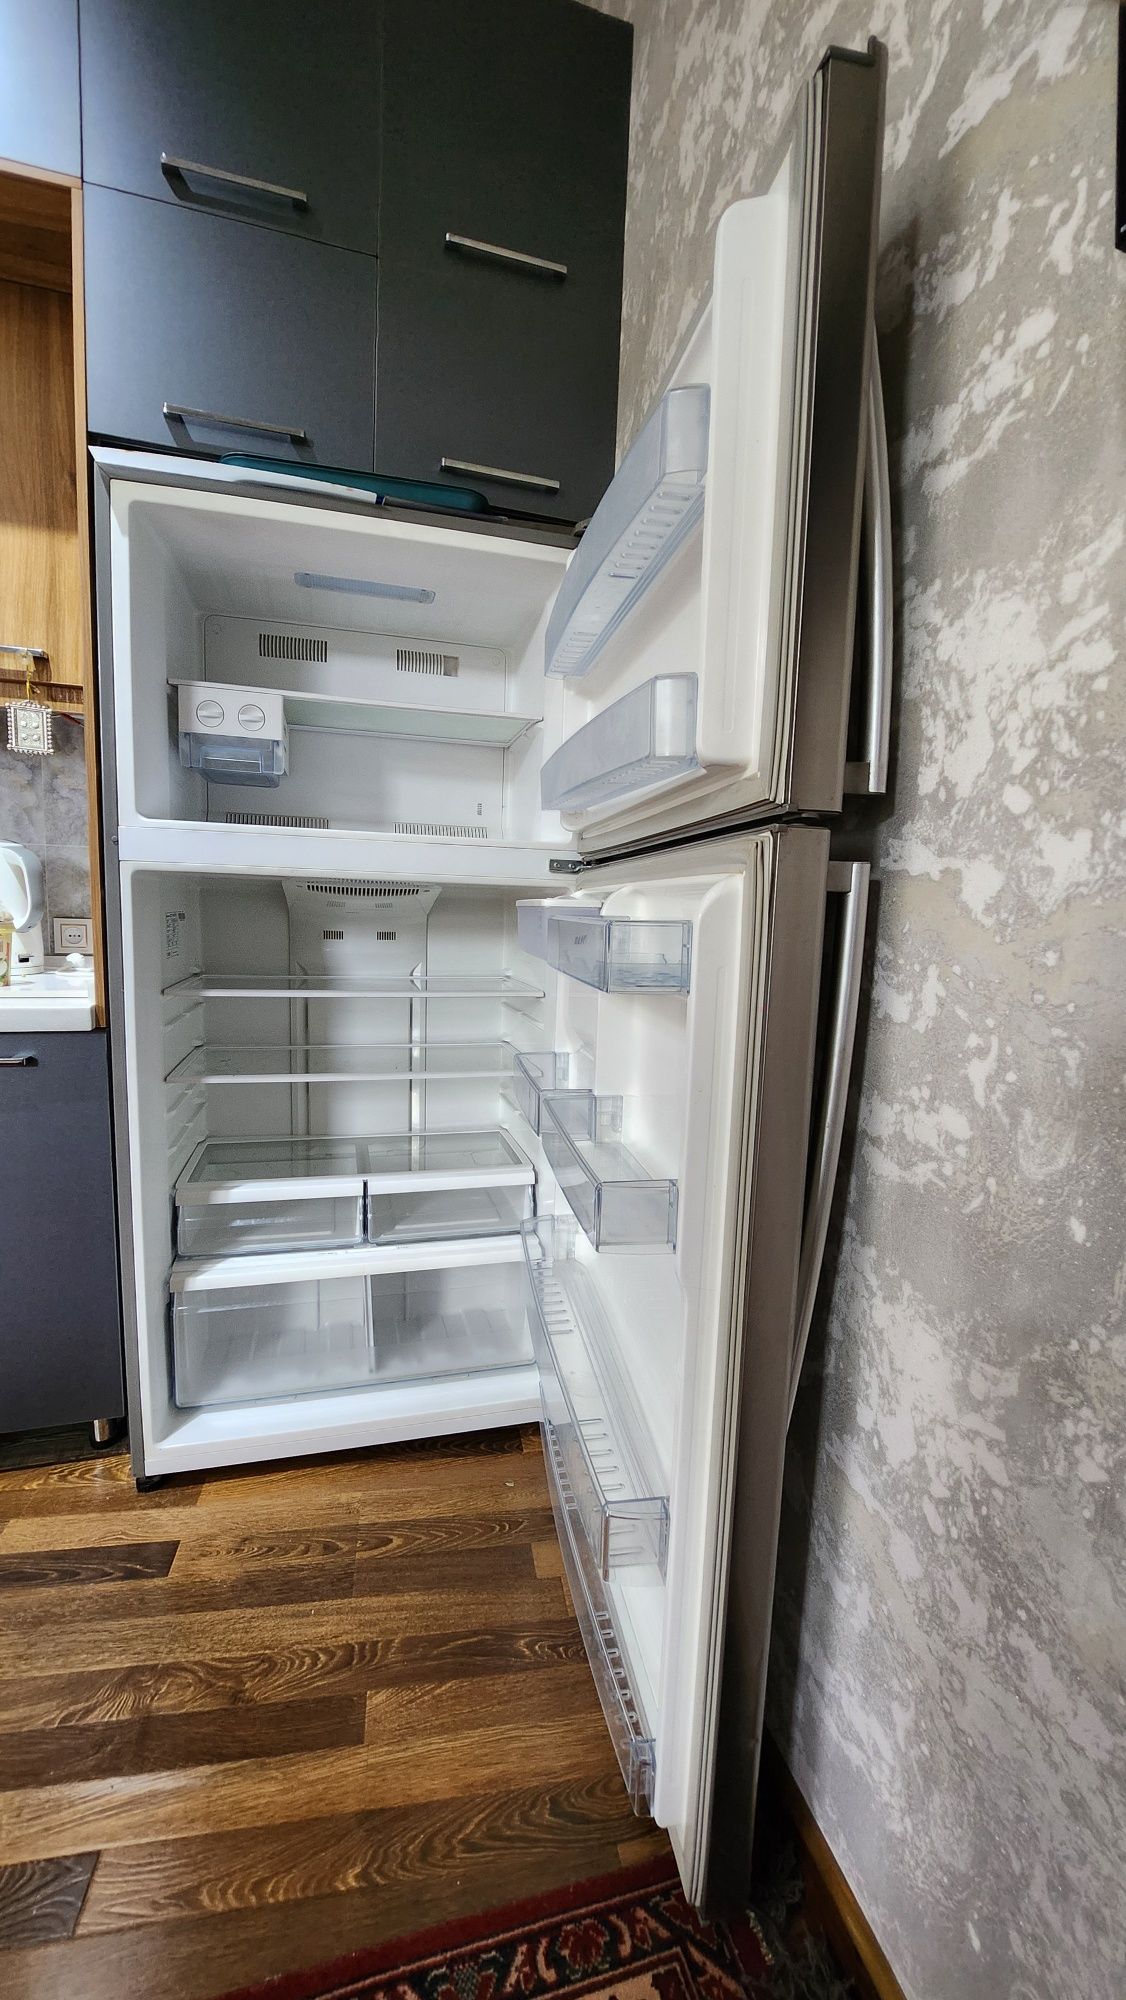 Холодильник Hofmann